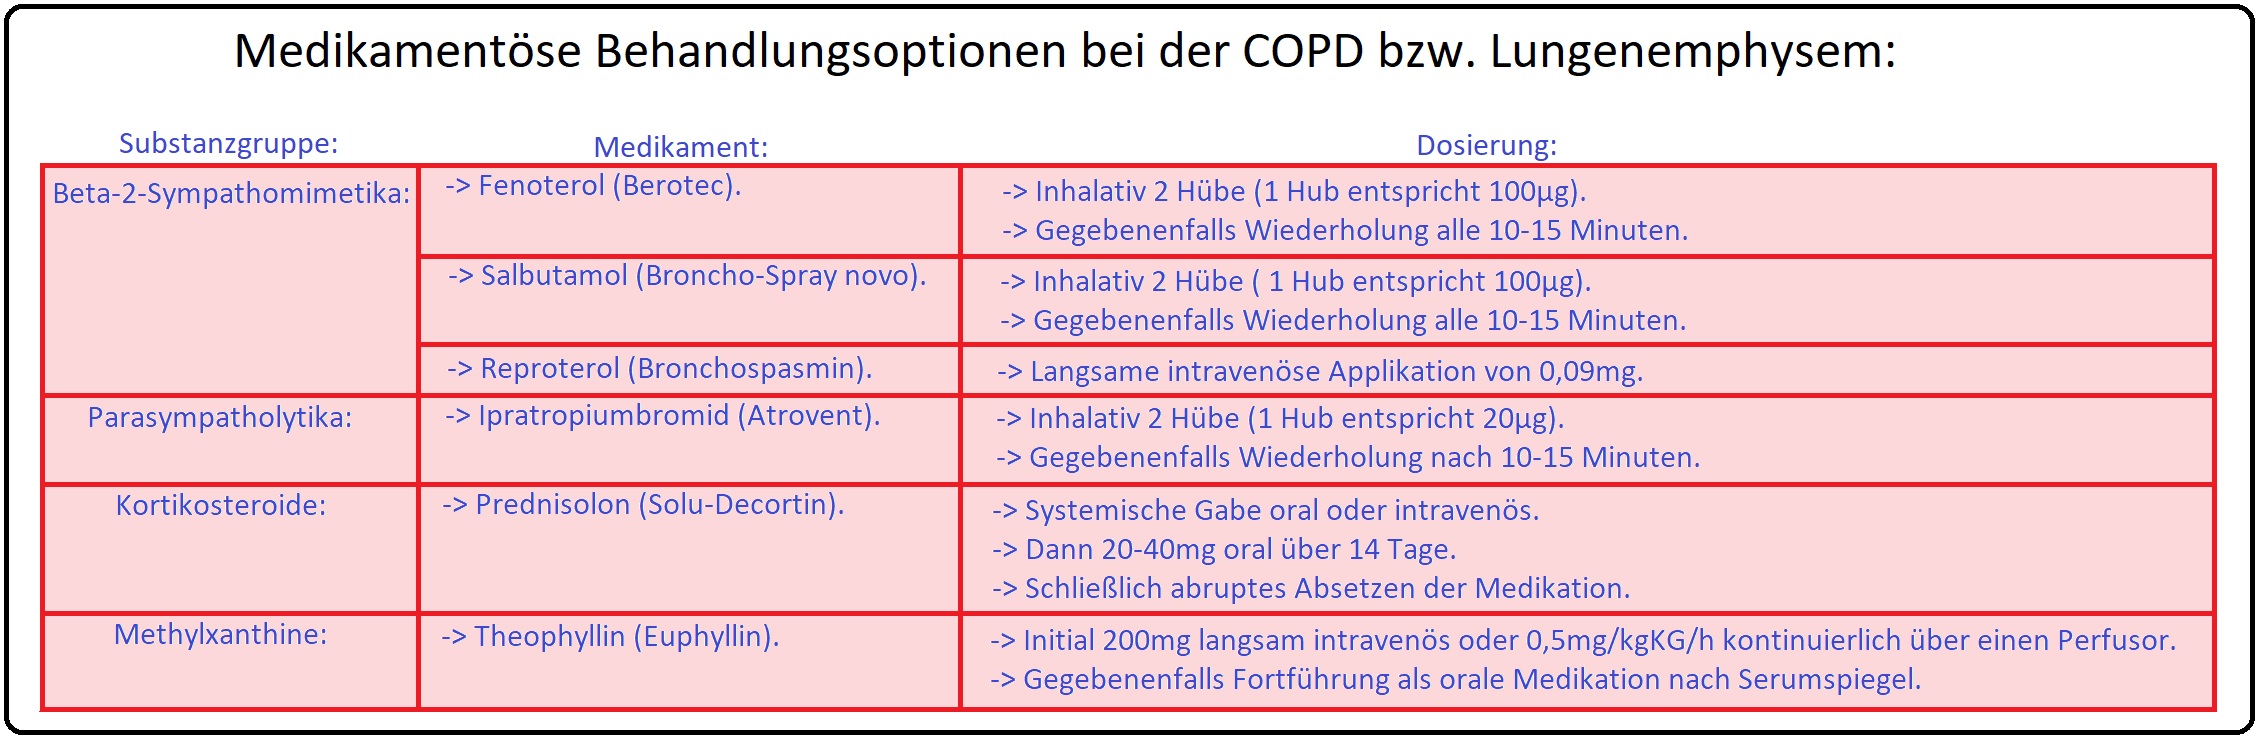 782 Medikamentöse Behandlungsoptionen bei der COPD bzw. Lungenemphysem